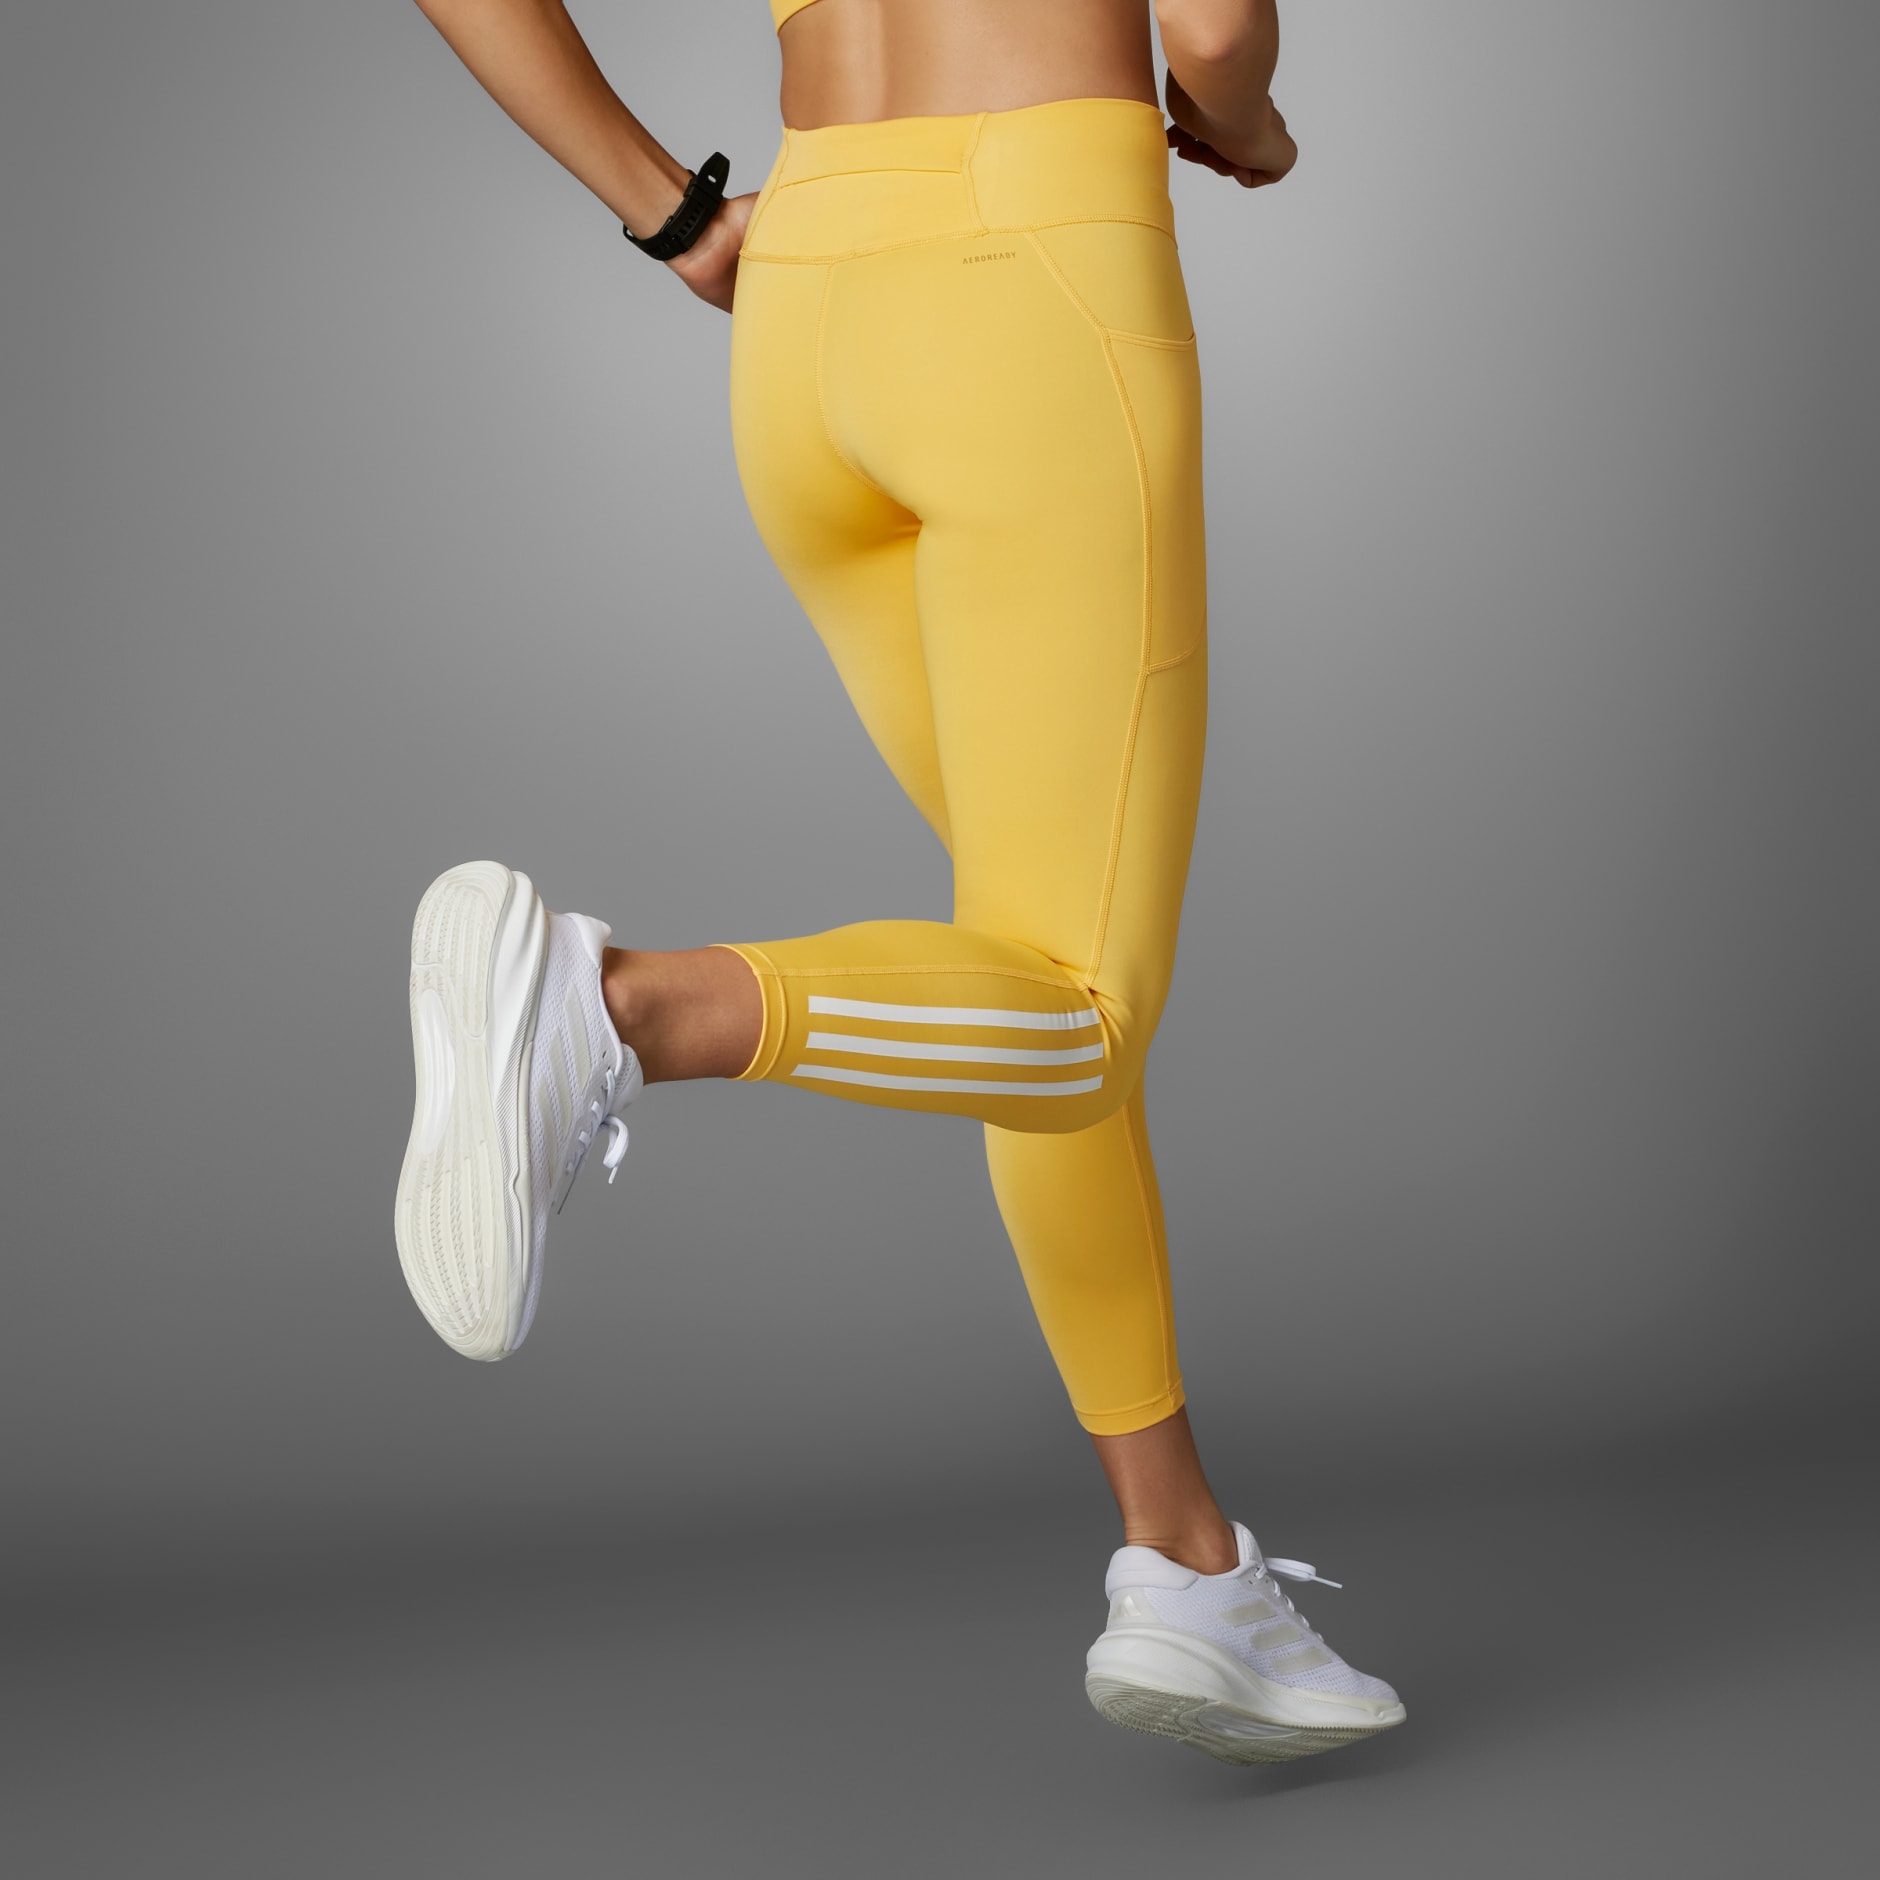  Yellow - Women's Activewear Leggings / Women's